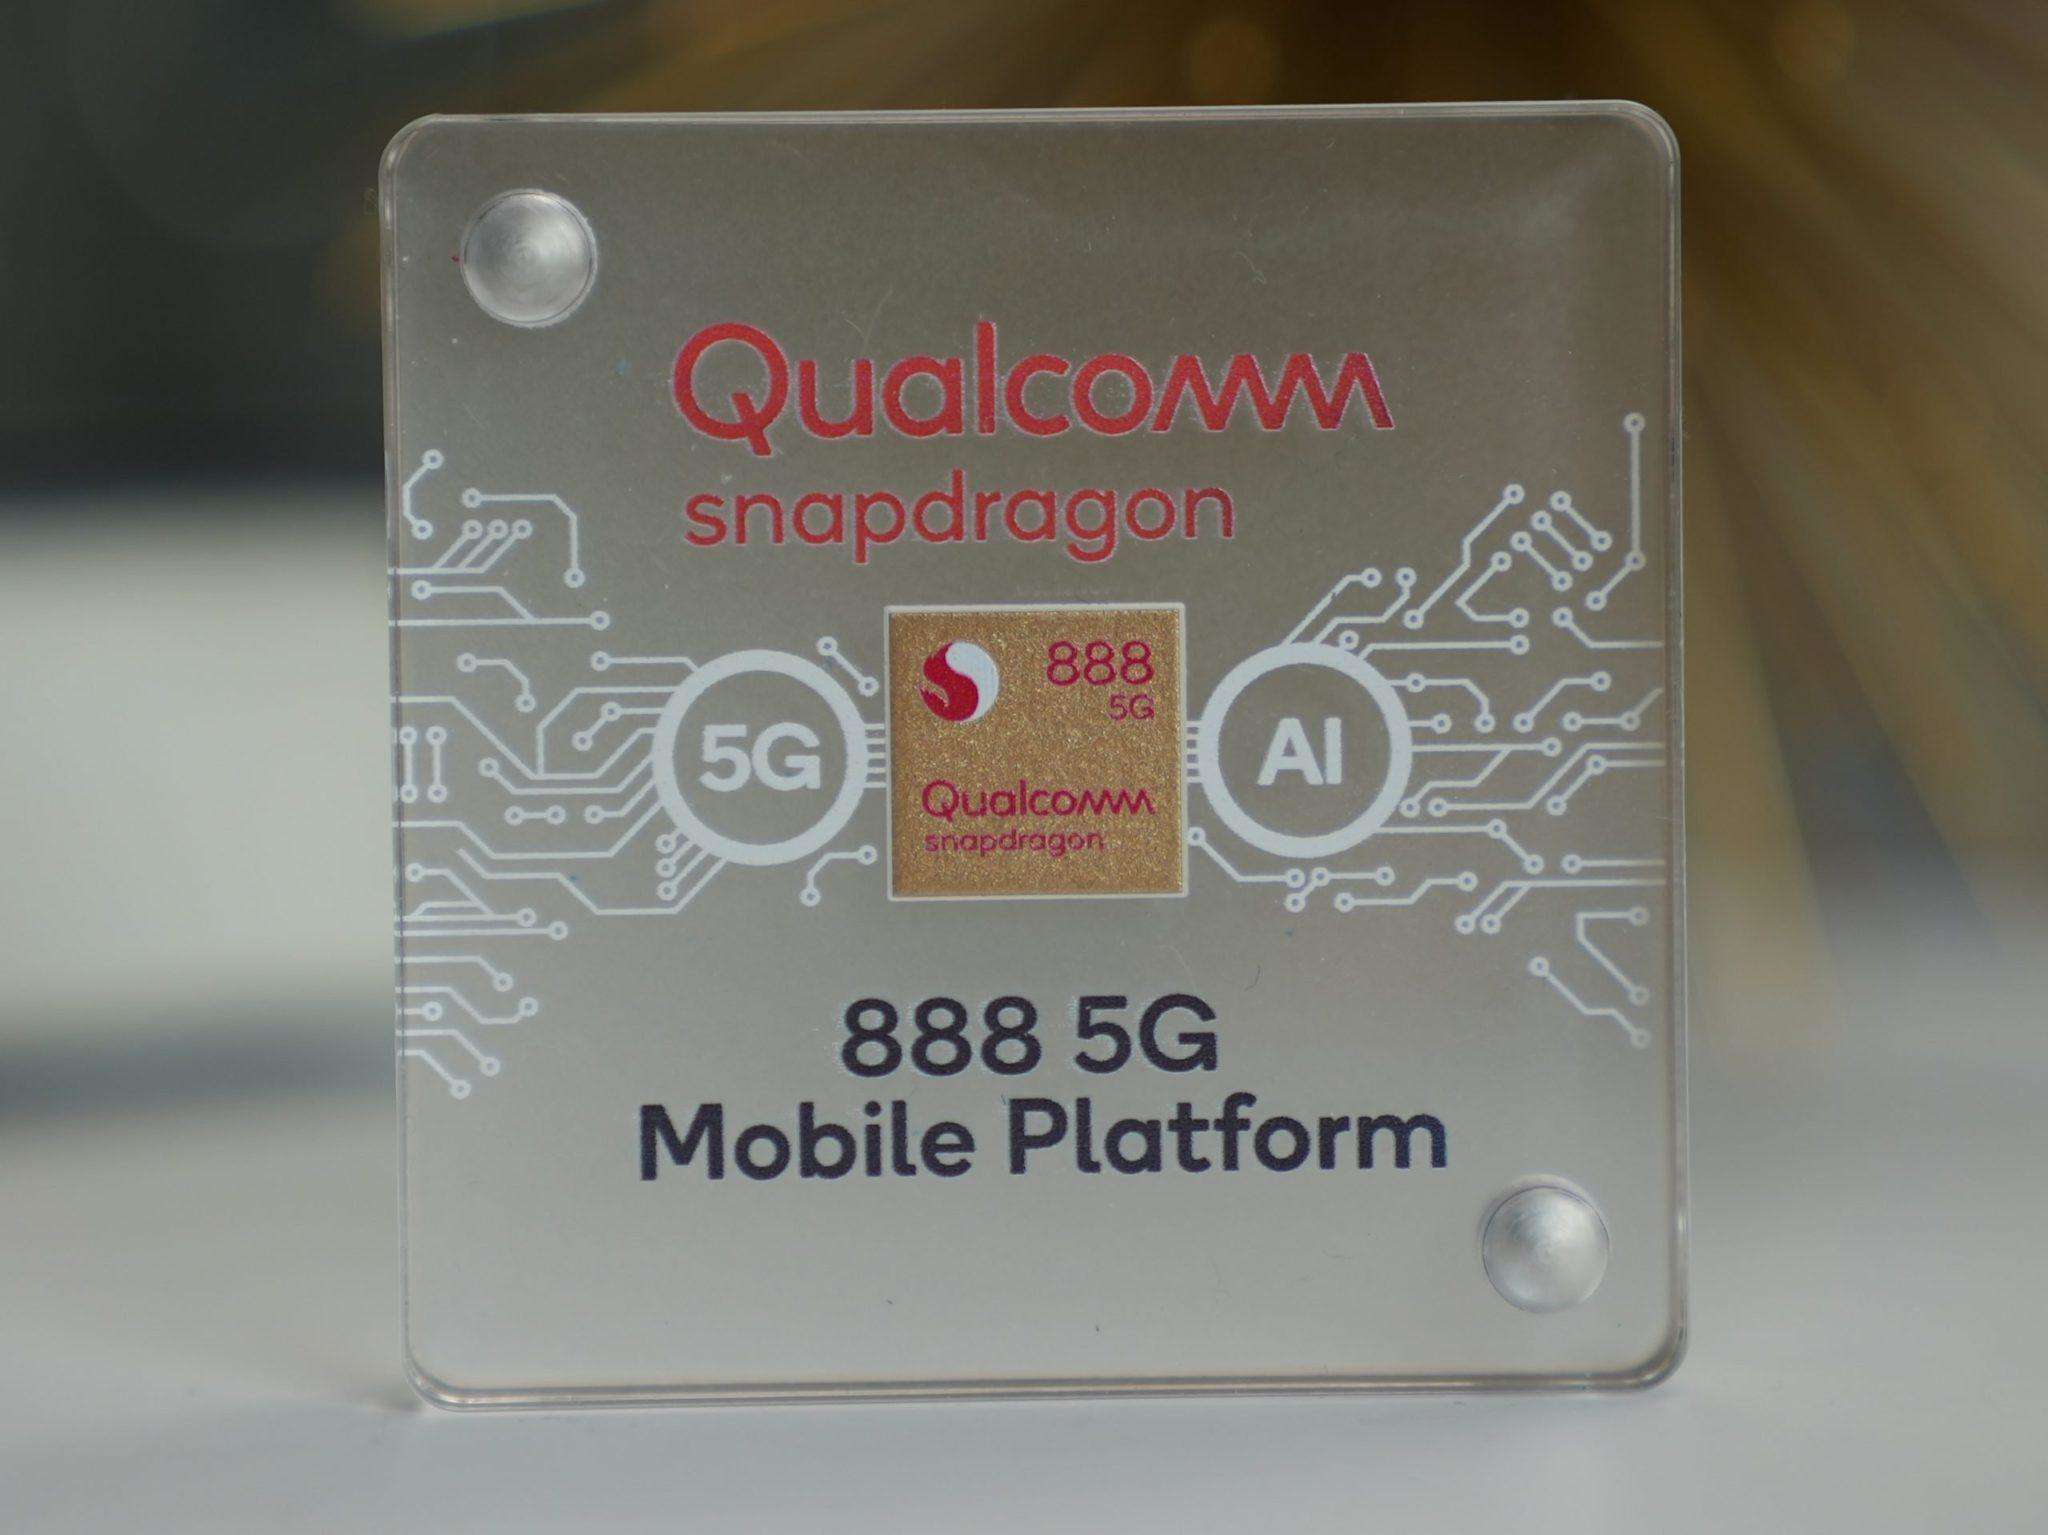 क्वालकॉम स्नैपड्रैगन 888 5G SoC न्यू AI इंजन के साथ, GPU ने 2021 के फ्लैगशिप फोन के लिए घोषित किया,जानें